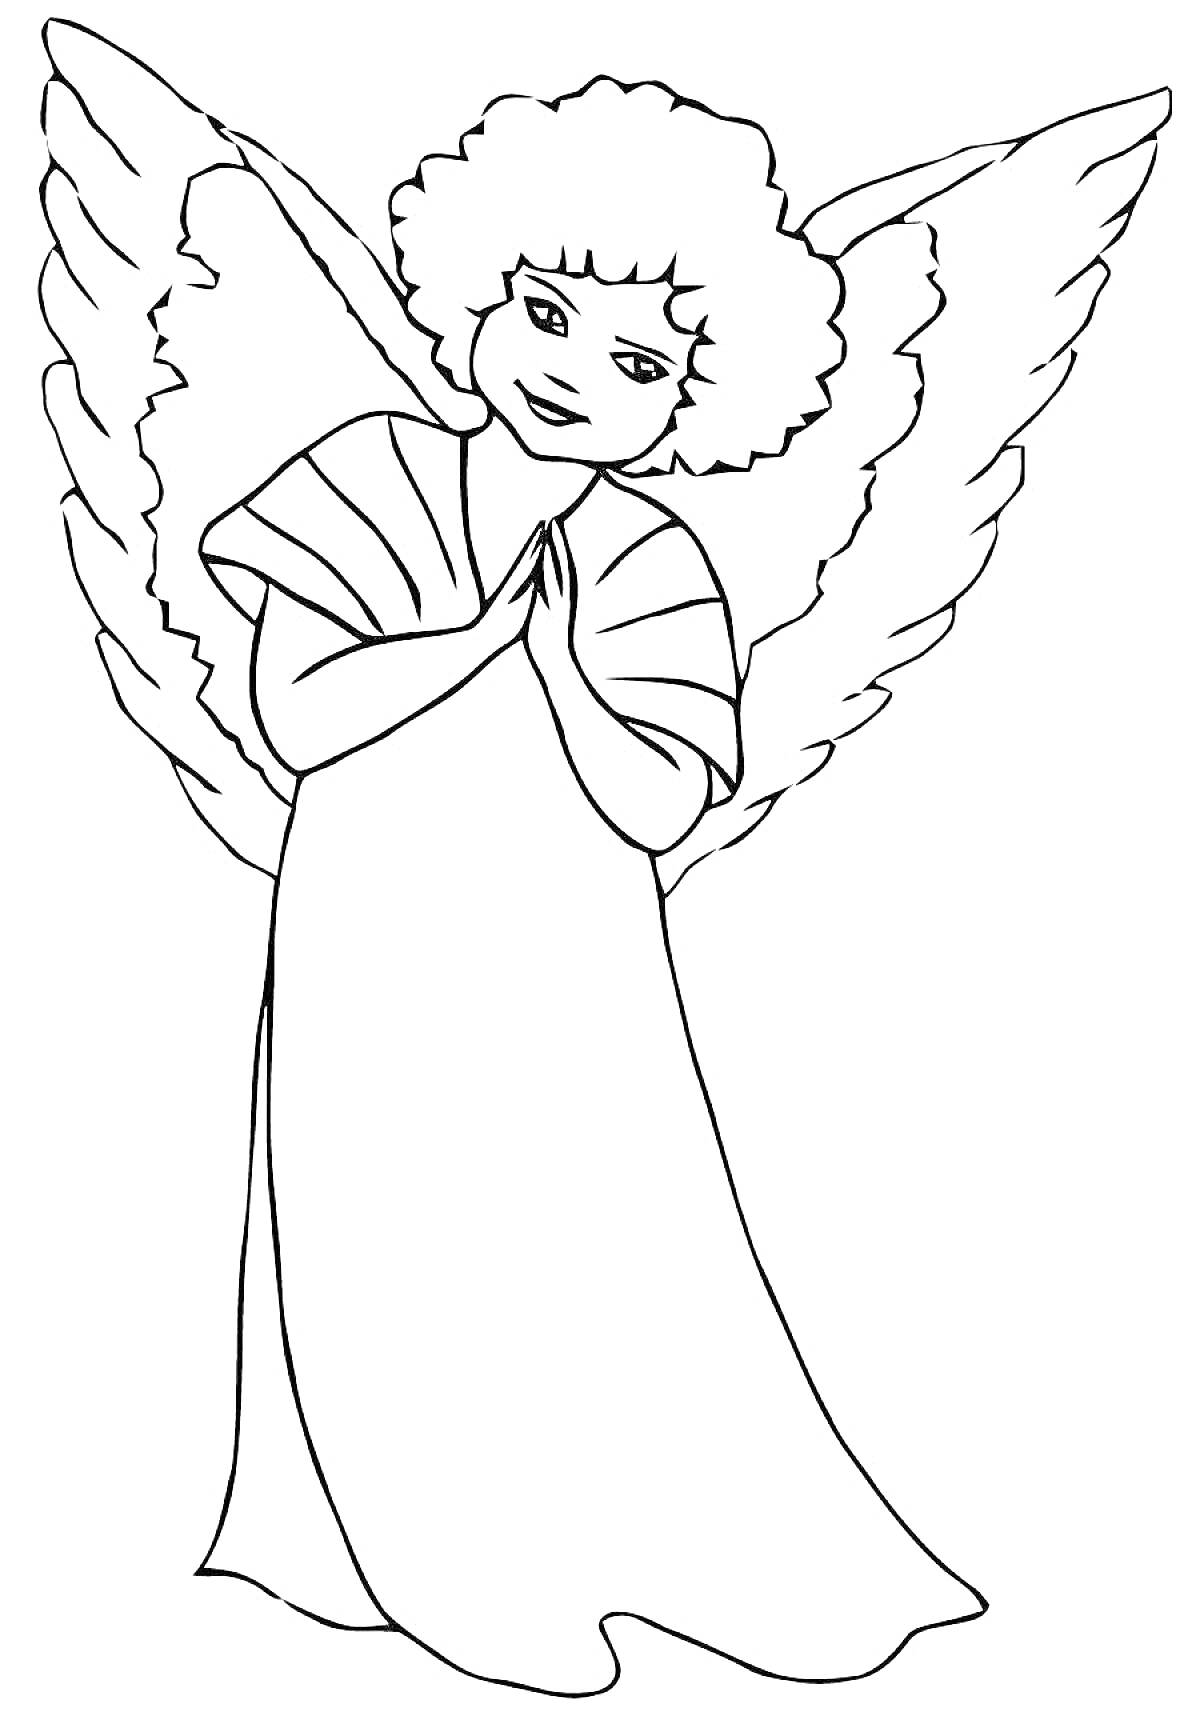 Раскраска Ангел с крыльями и в длинном платье, руки сложены на груди.